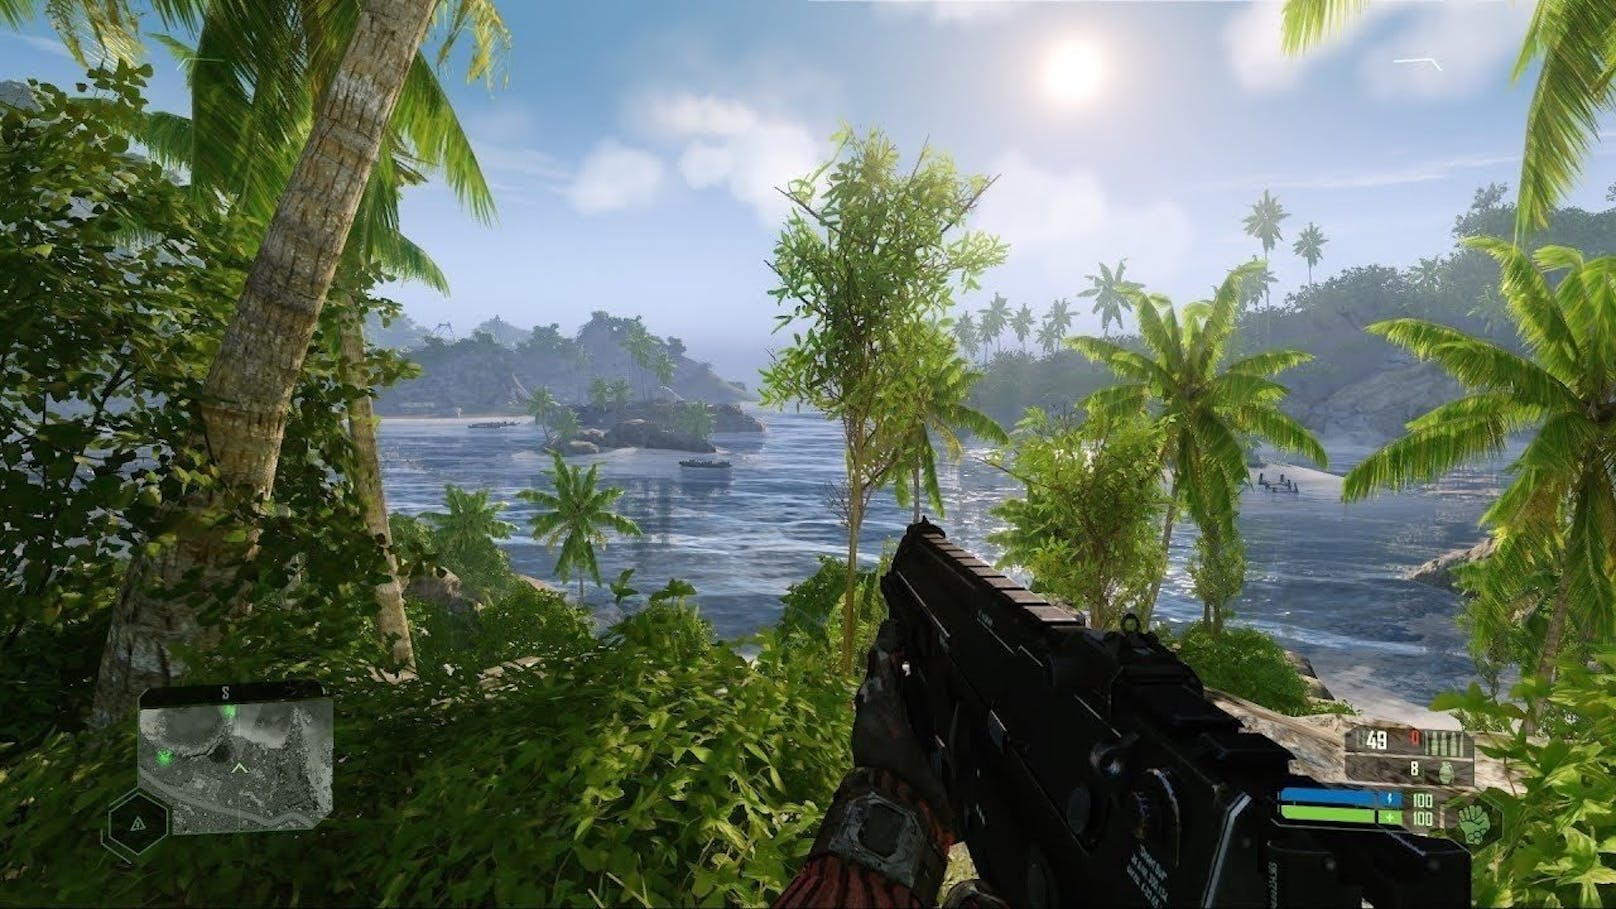 Klar, "Crysis Remastered" sieht heute noch besser aus: Die CryEngine 5 sorgt unter anderem für Ray-Tracing und 8K-Auflösung, auf der PlayStation 4 fallen neben schärferen Texturen auch zusätzliche Lichteffekte auf.